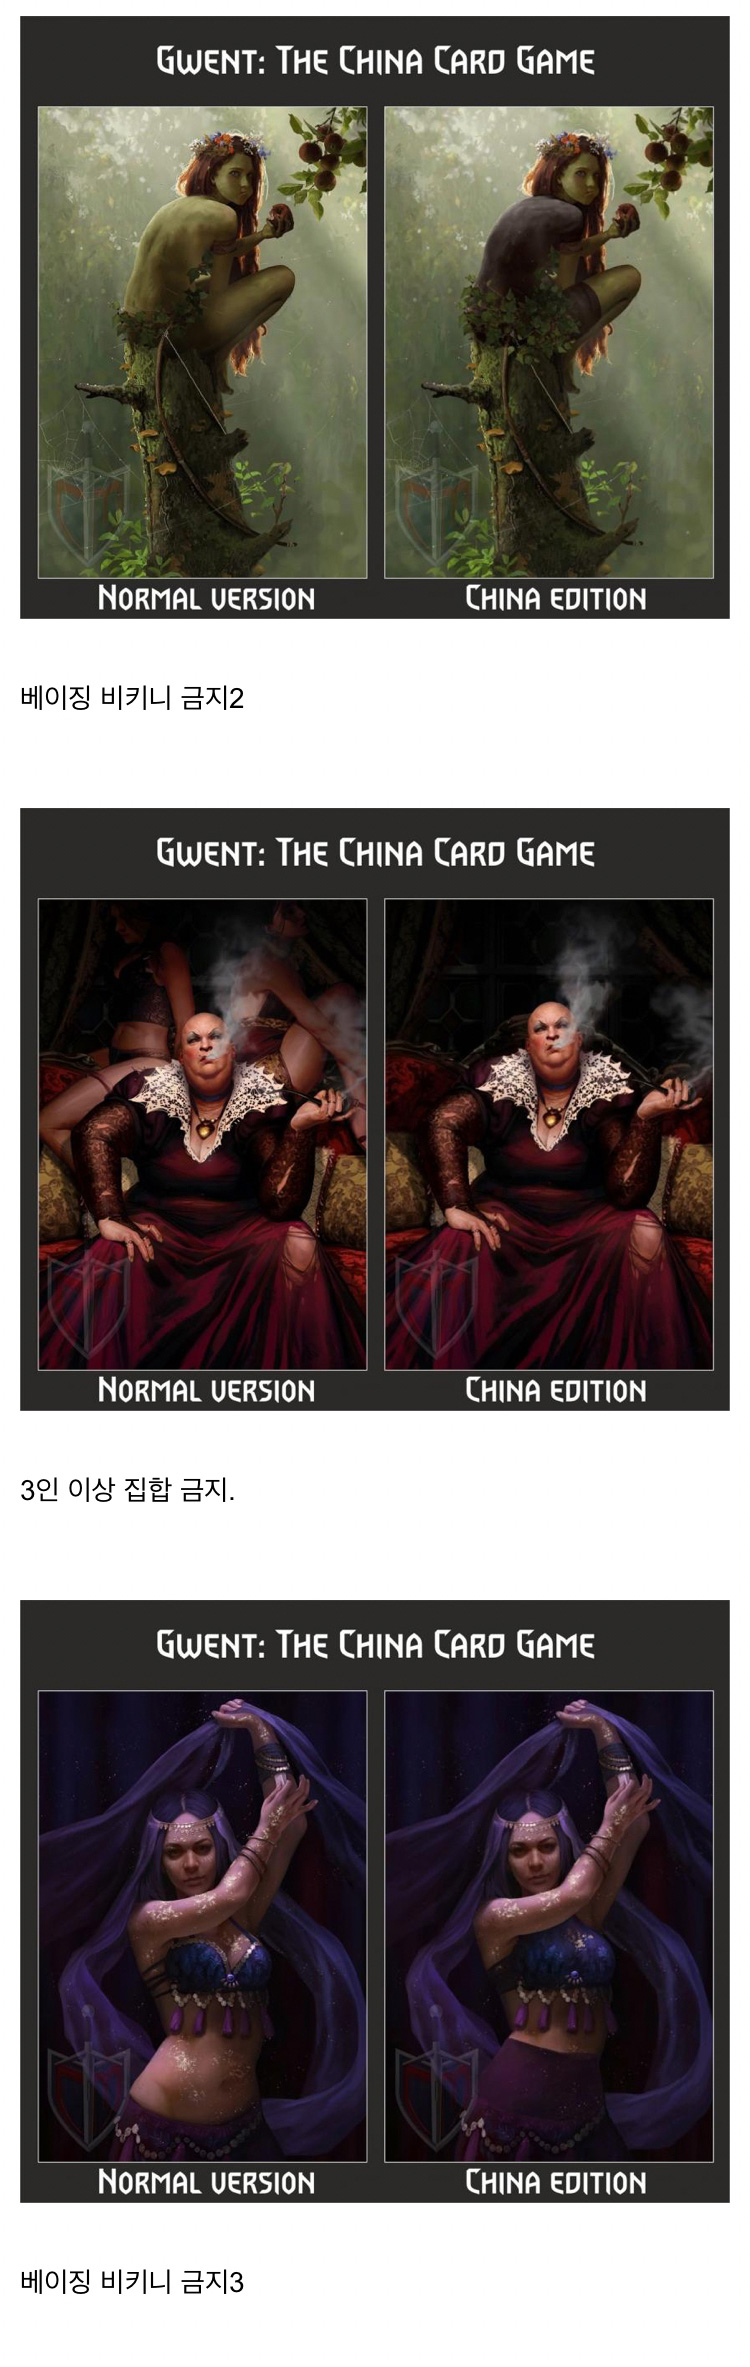 중국 공산당 검열 앞에 공손해진 카드 게임 - 꾸르